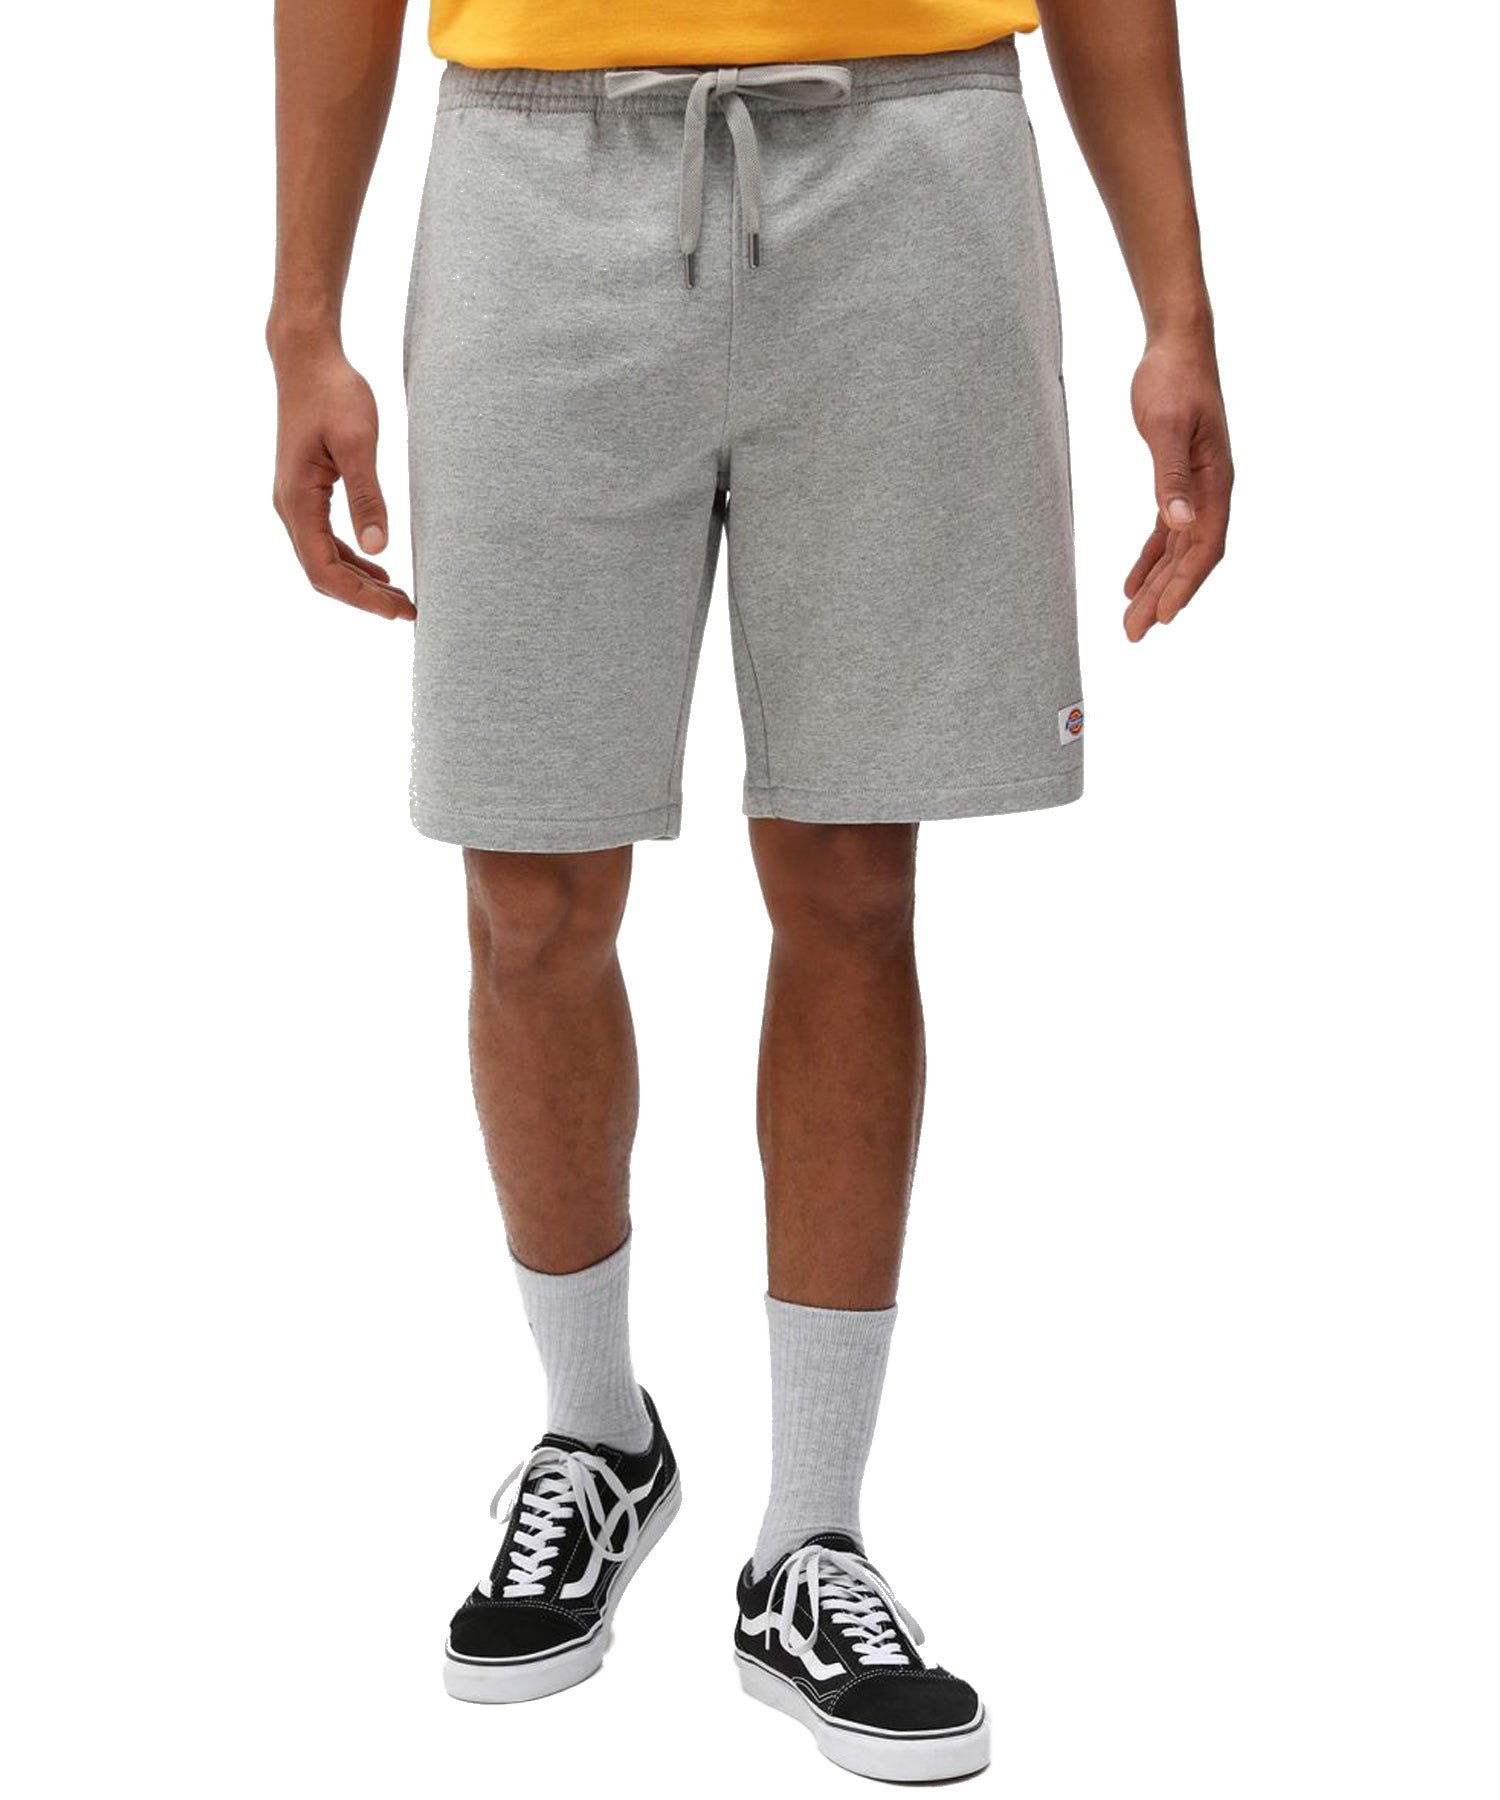 dickies pantalon corto de color gris cintura elastica con cordón y pequeño logo dickies en la pierna-tejido tipo chandal.